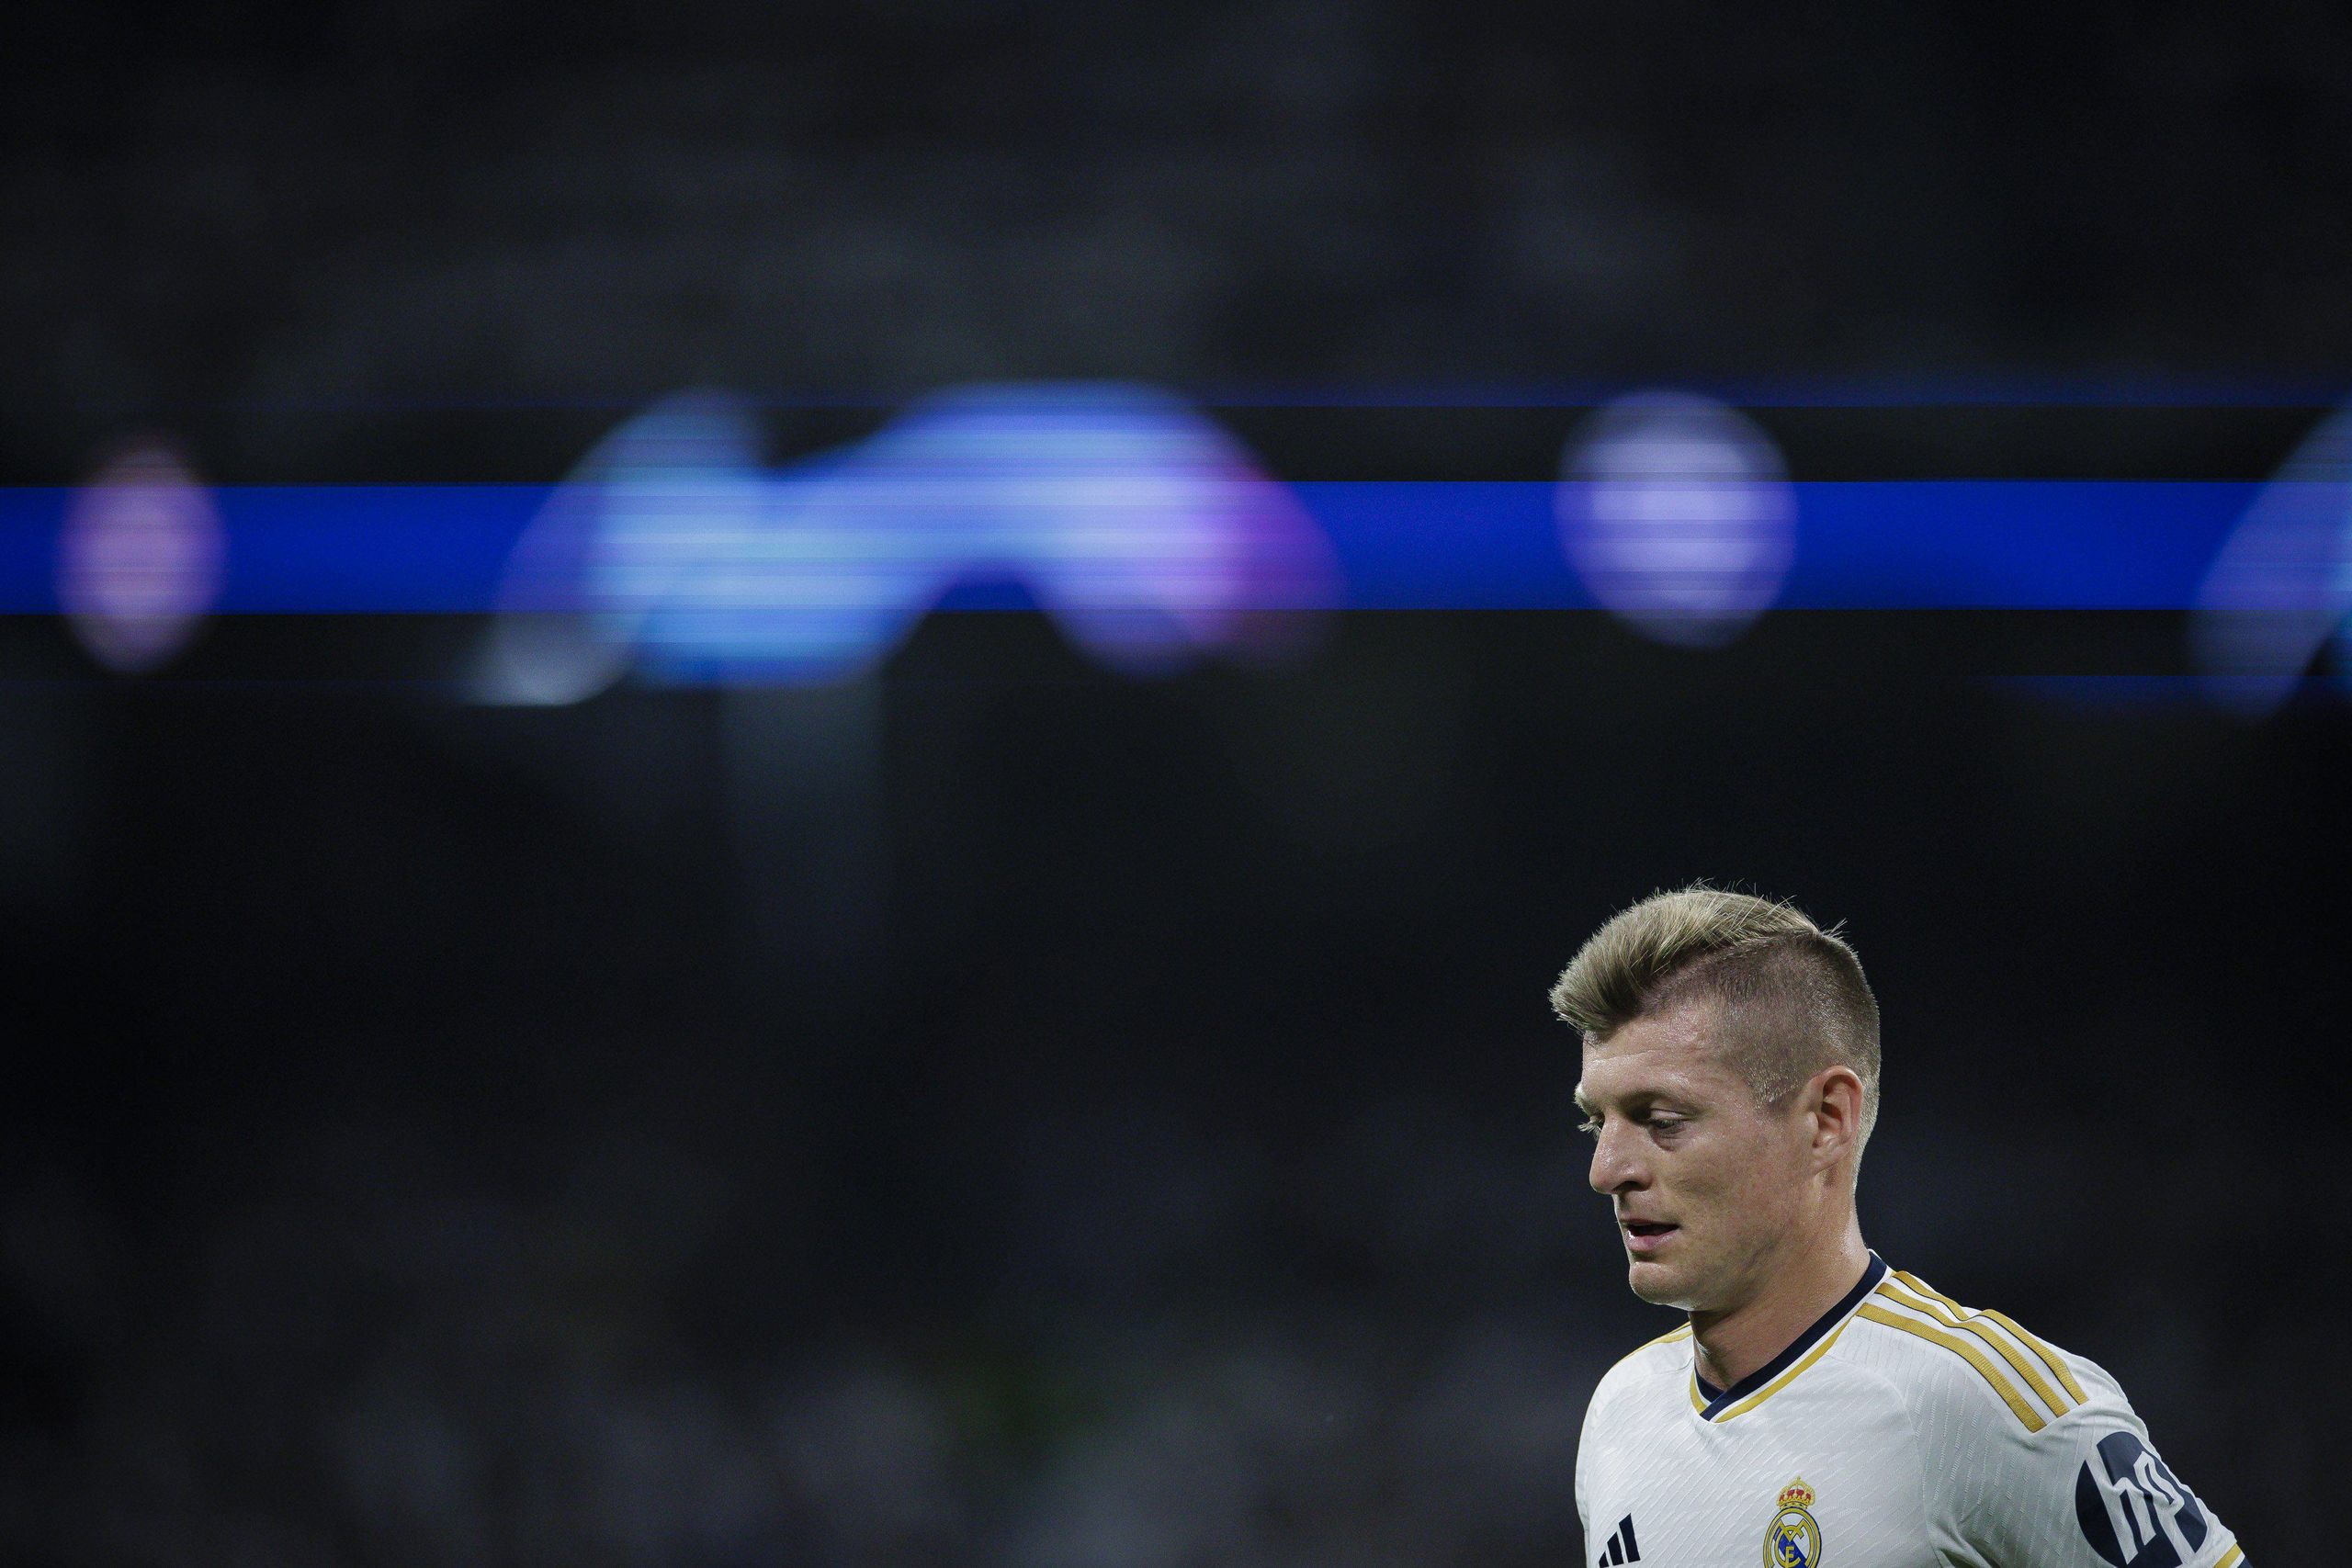 Empate entre Real Madrid y Real Betis en la despedida de Kroos